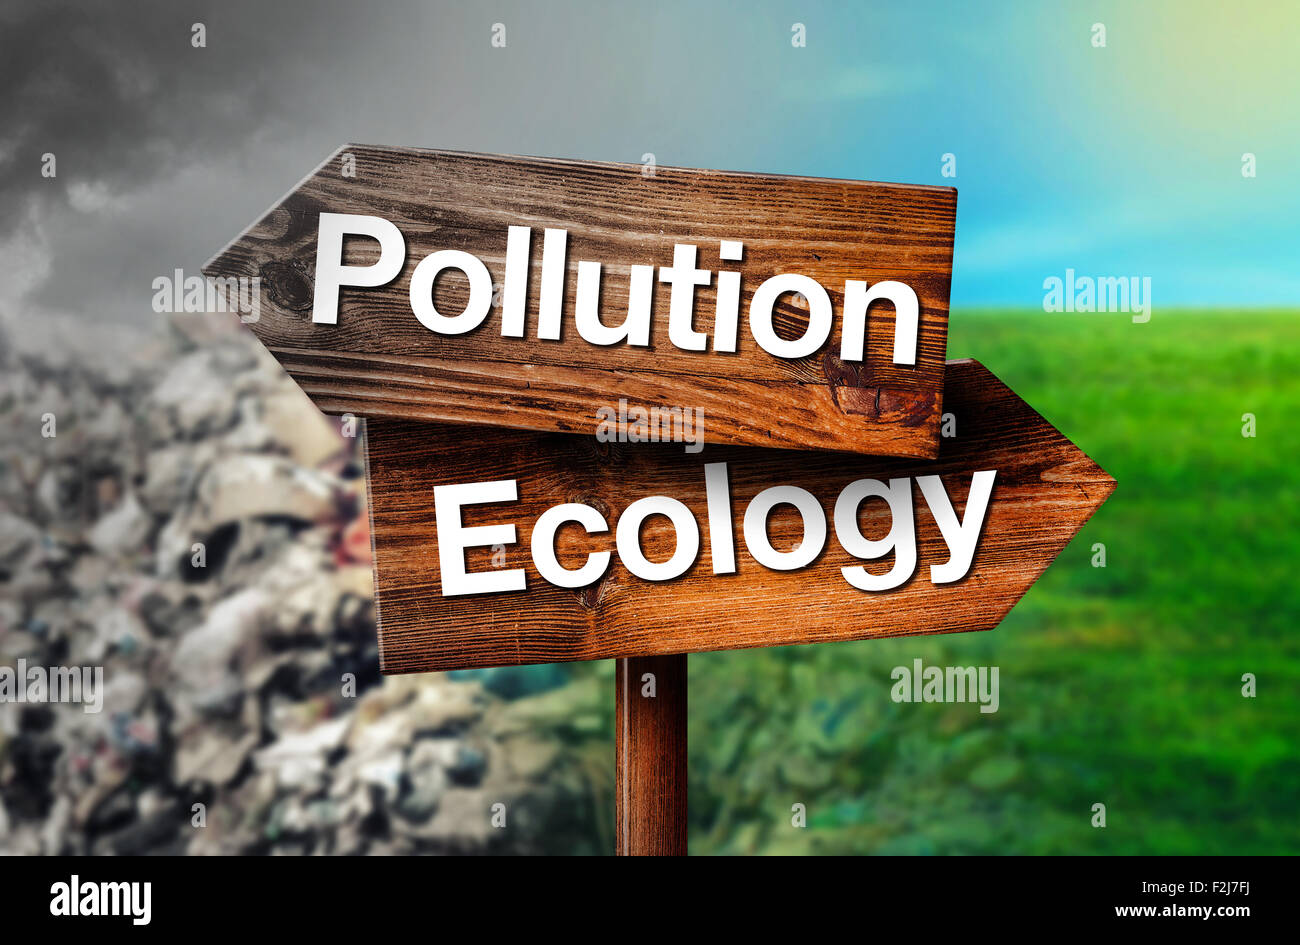 La pollution ou Ecology Concept de choix, rustique en bois panneau indiquant la direction opposée au dépotoir et nettoyer les herbages Banque D'Images